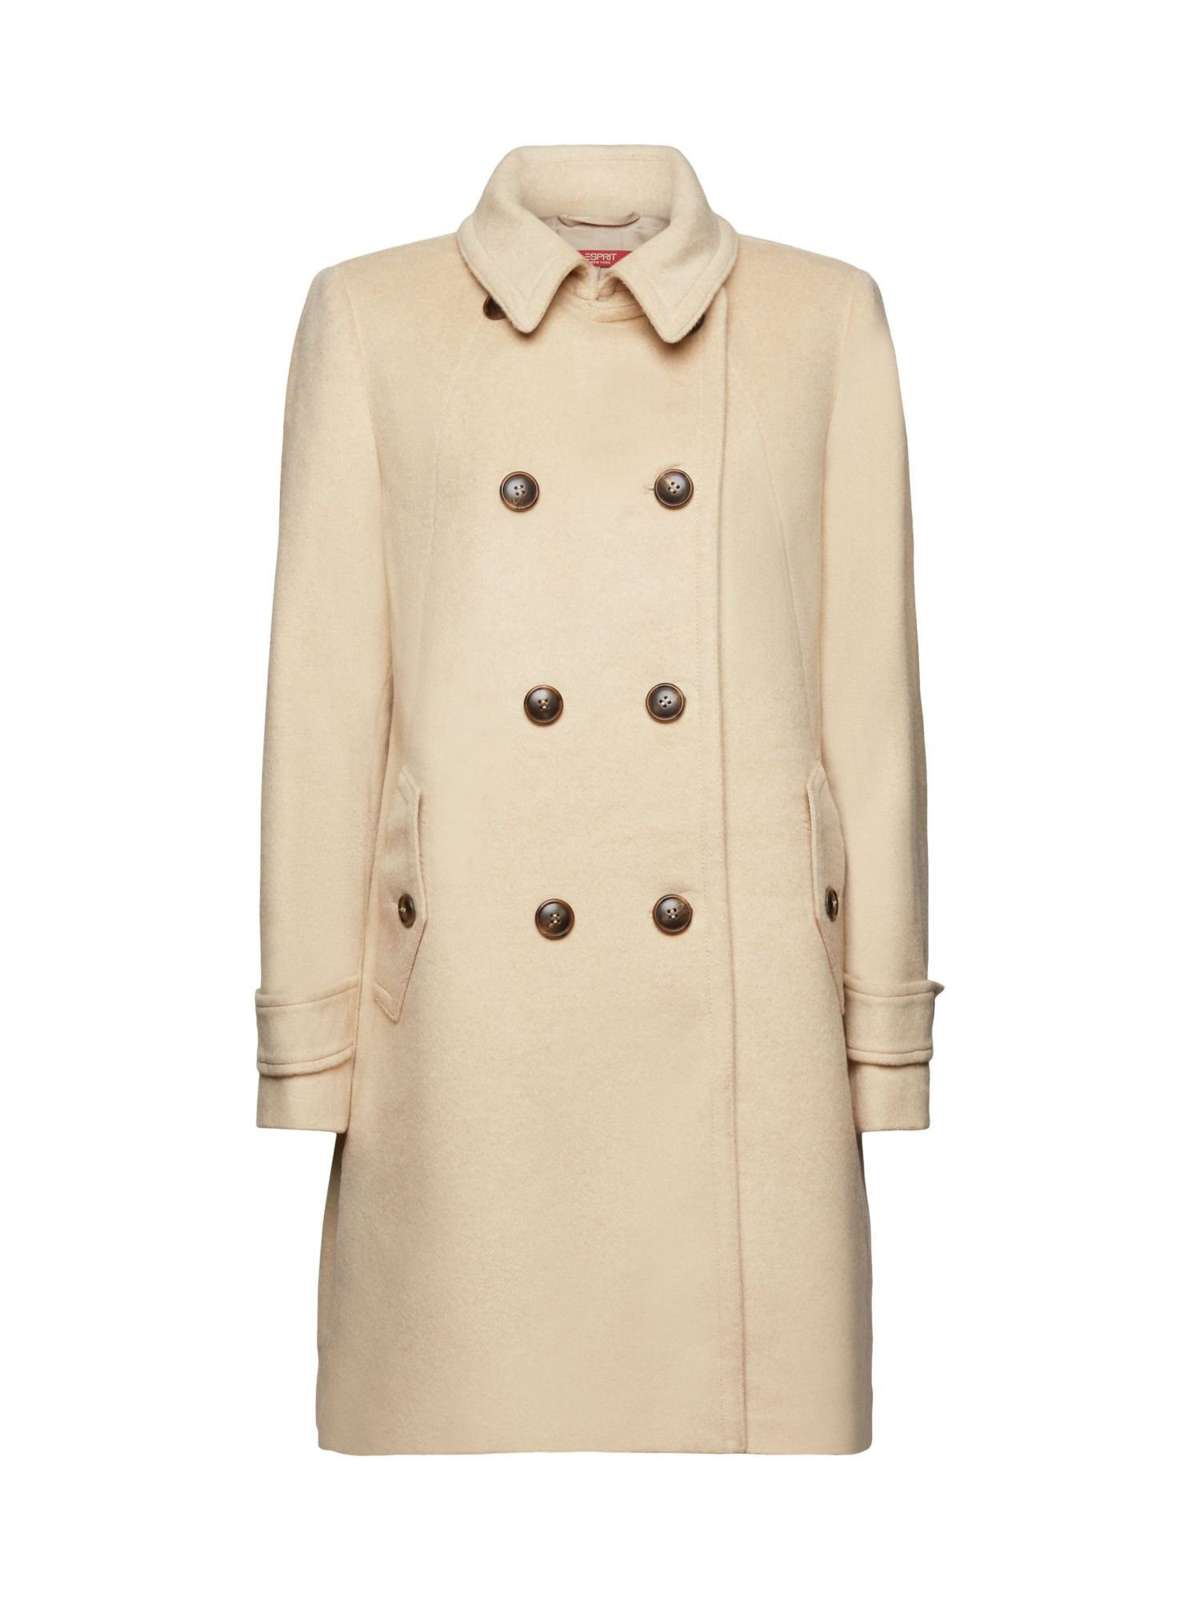 Пальто из переработанной шерсти: пальто из смеси шерсти с кашемиром.